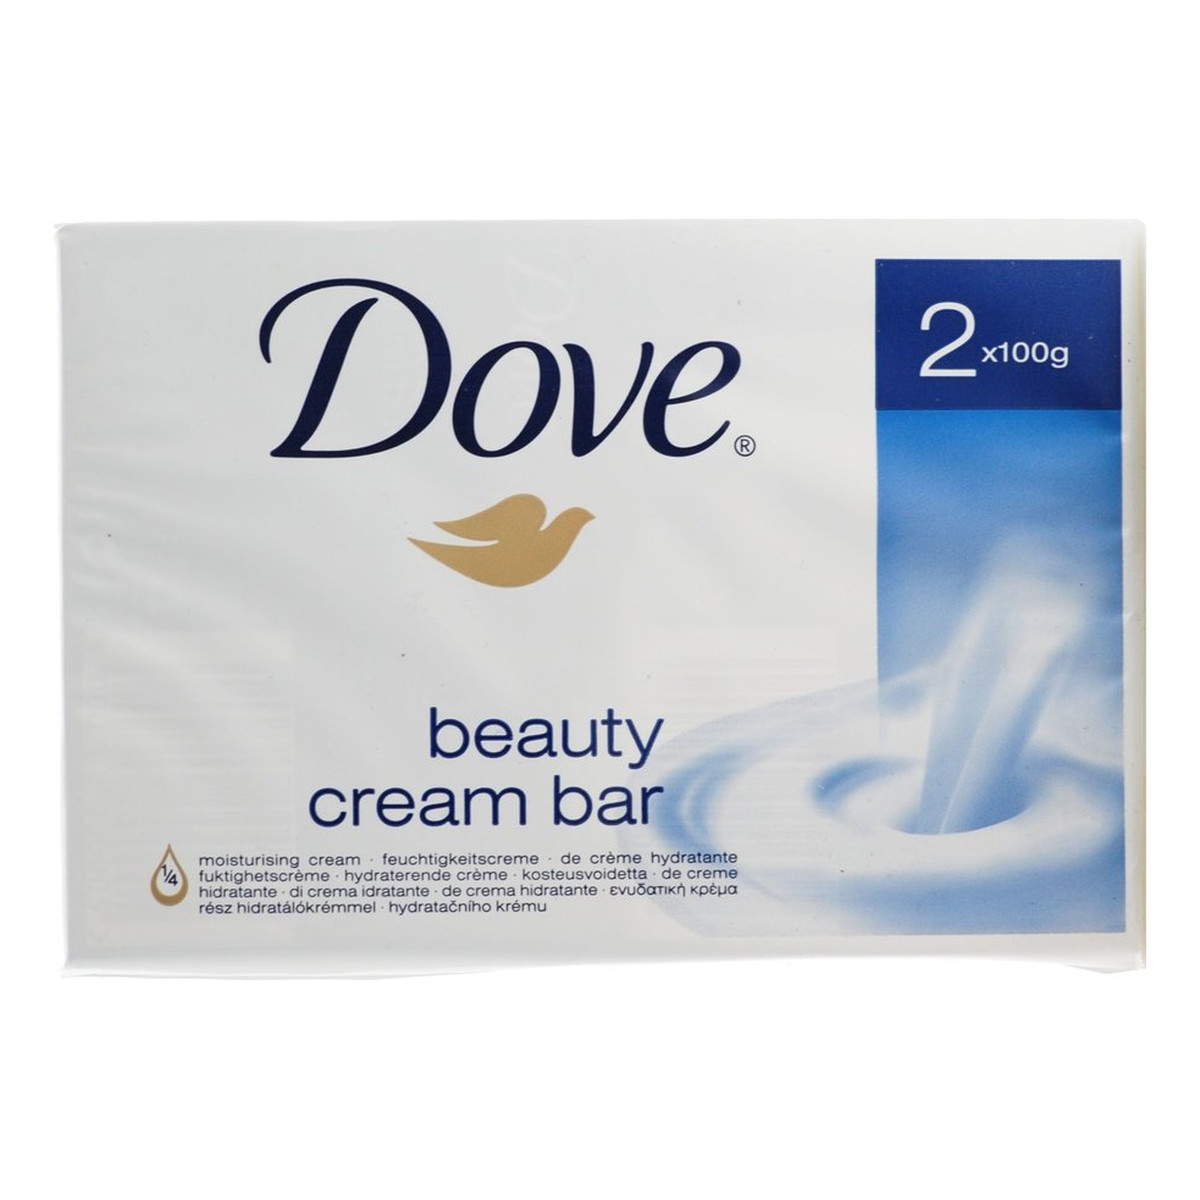 Dove Beauty Cream Bar nawilżające mydło w kostce 2x100g 200g